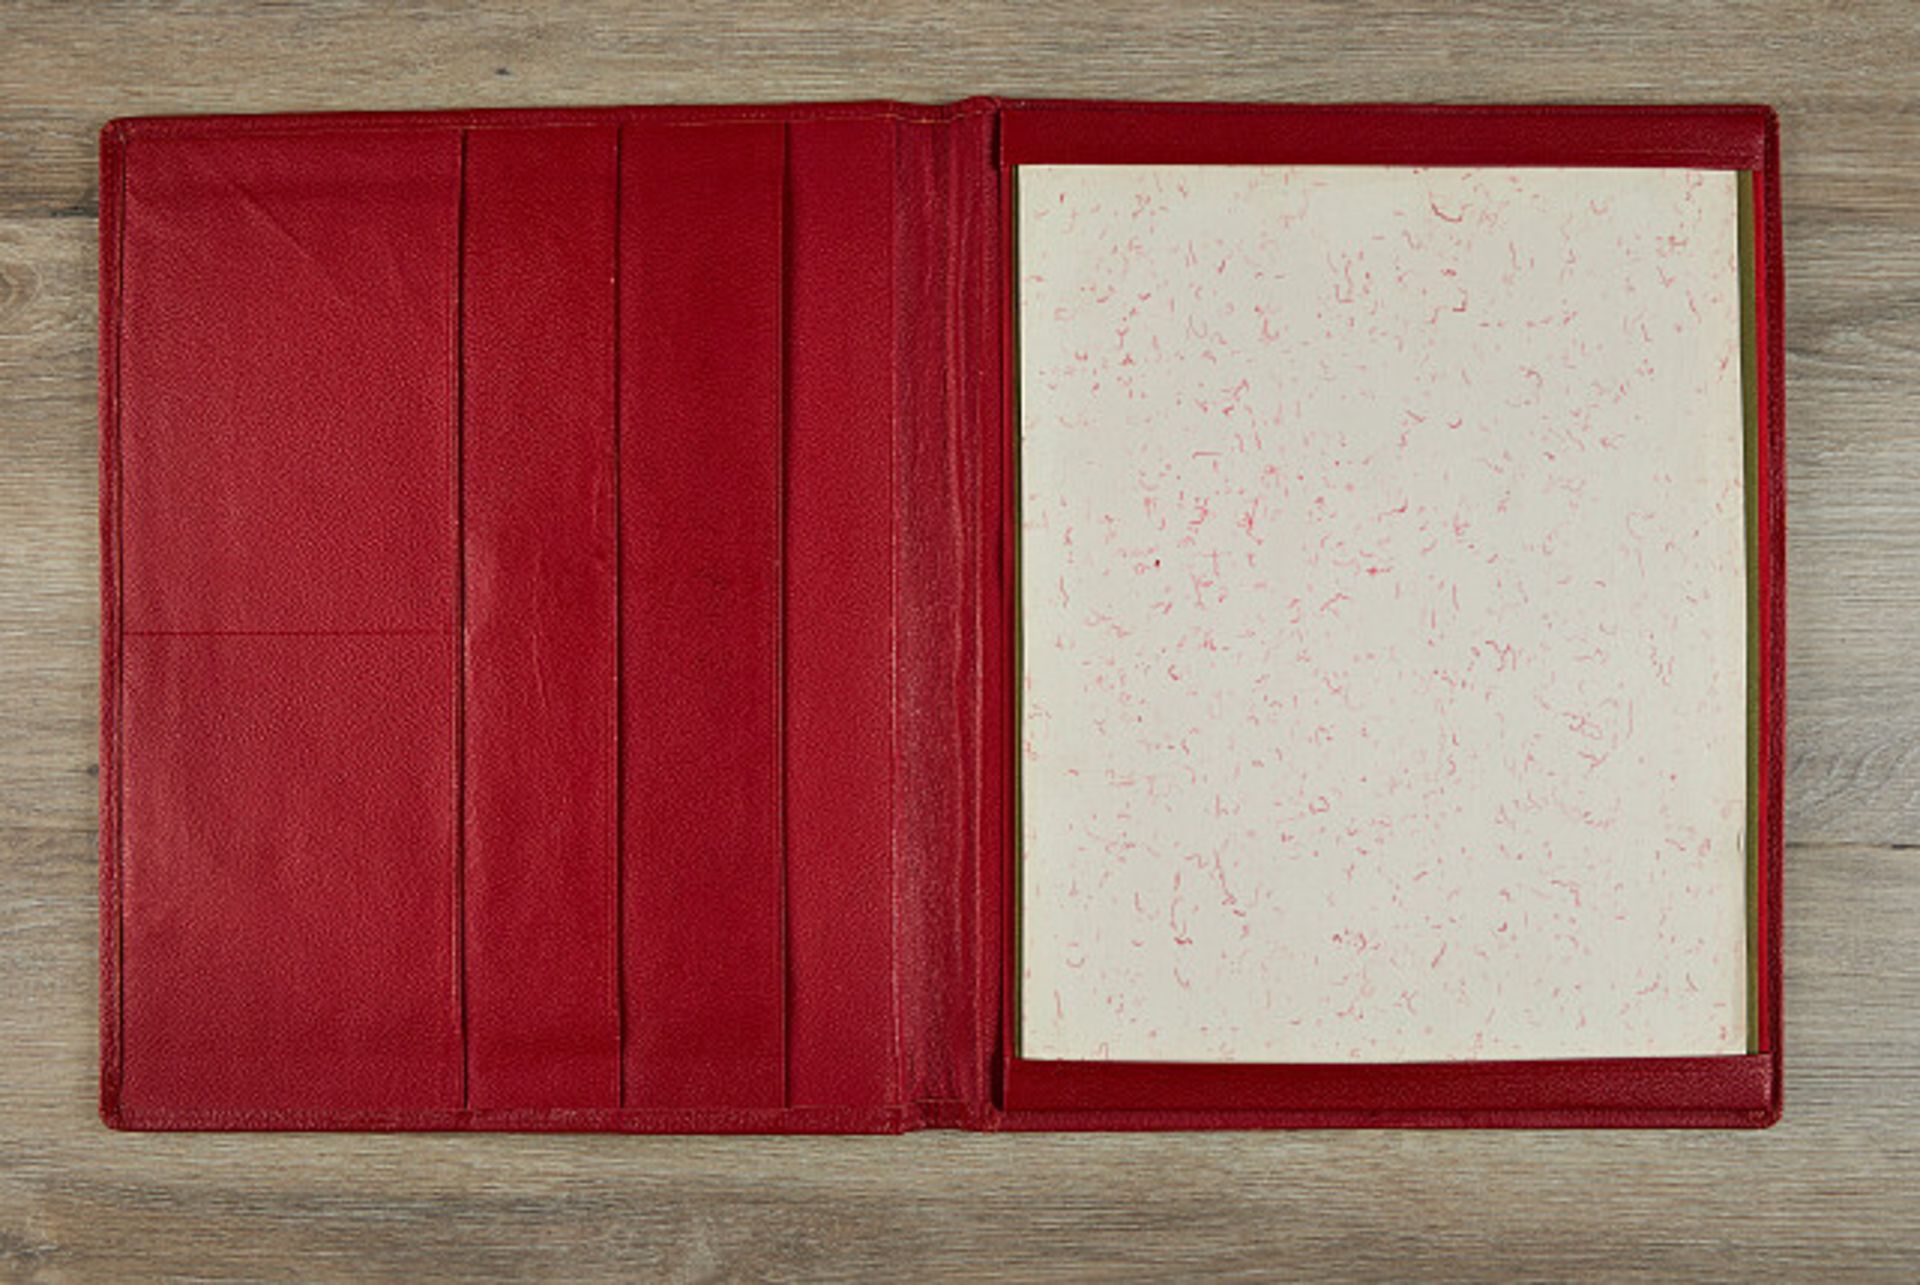 Deutsches Reich 1933 - 1945 - Zeitgeschichtliche Objekte : Große rote Leder-Schreibmappe, vermutlich - Bild 2 aus 2